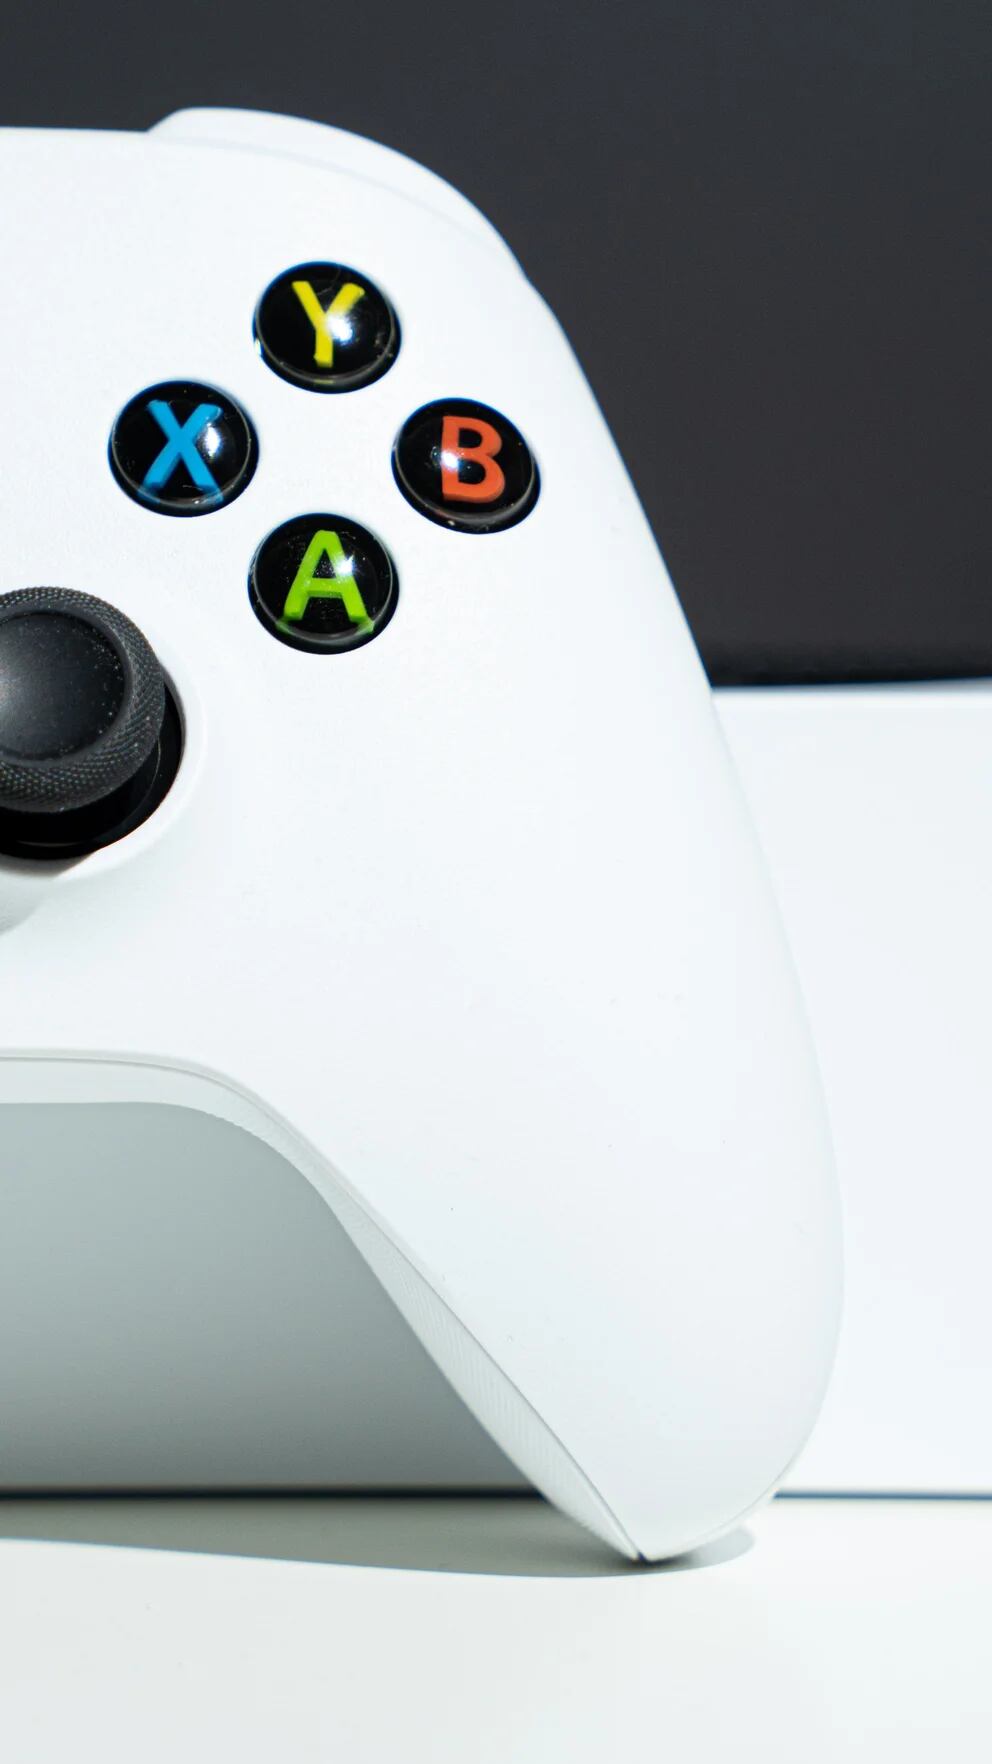 Microosft habla de Xbox Series S y recomienda a los desarrolladores  planificarse mejor